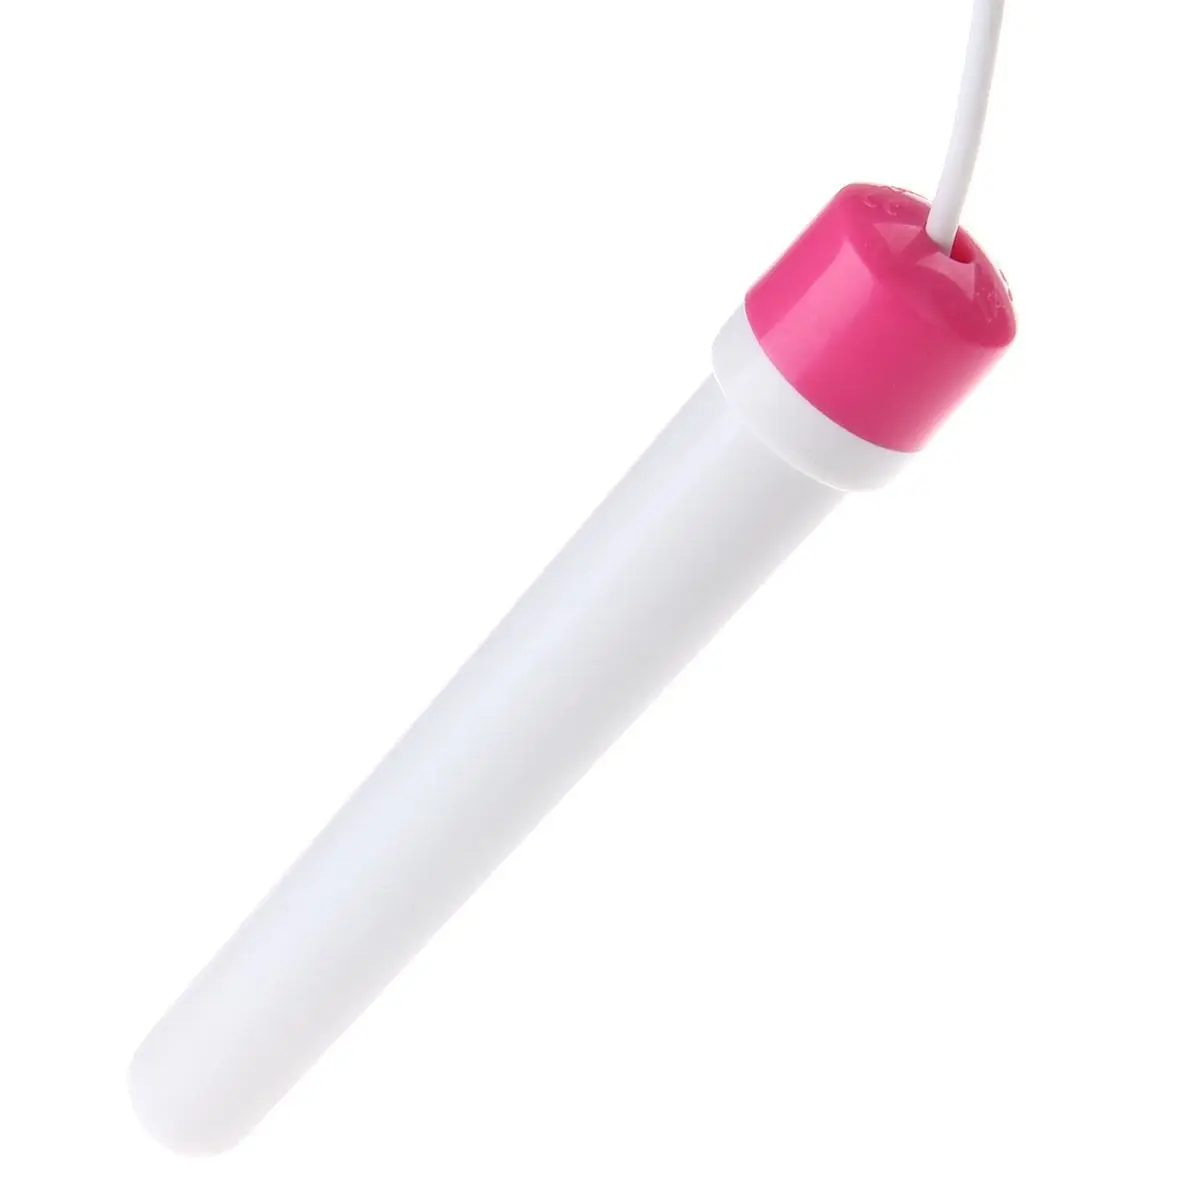 Секс игрушки для взрослых с быстрым нагревом и USB разъемом мастурбации надувная - Фото №1